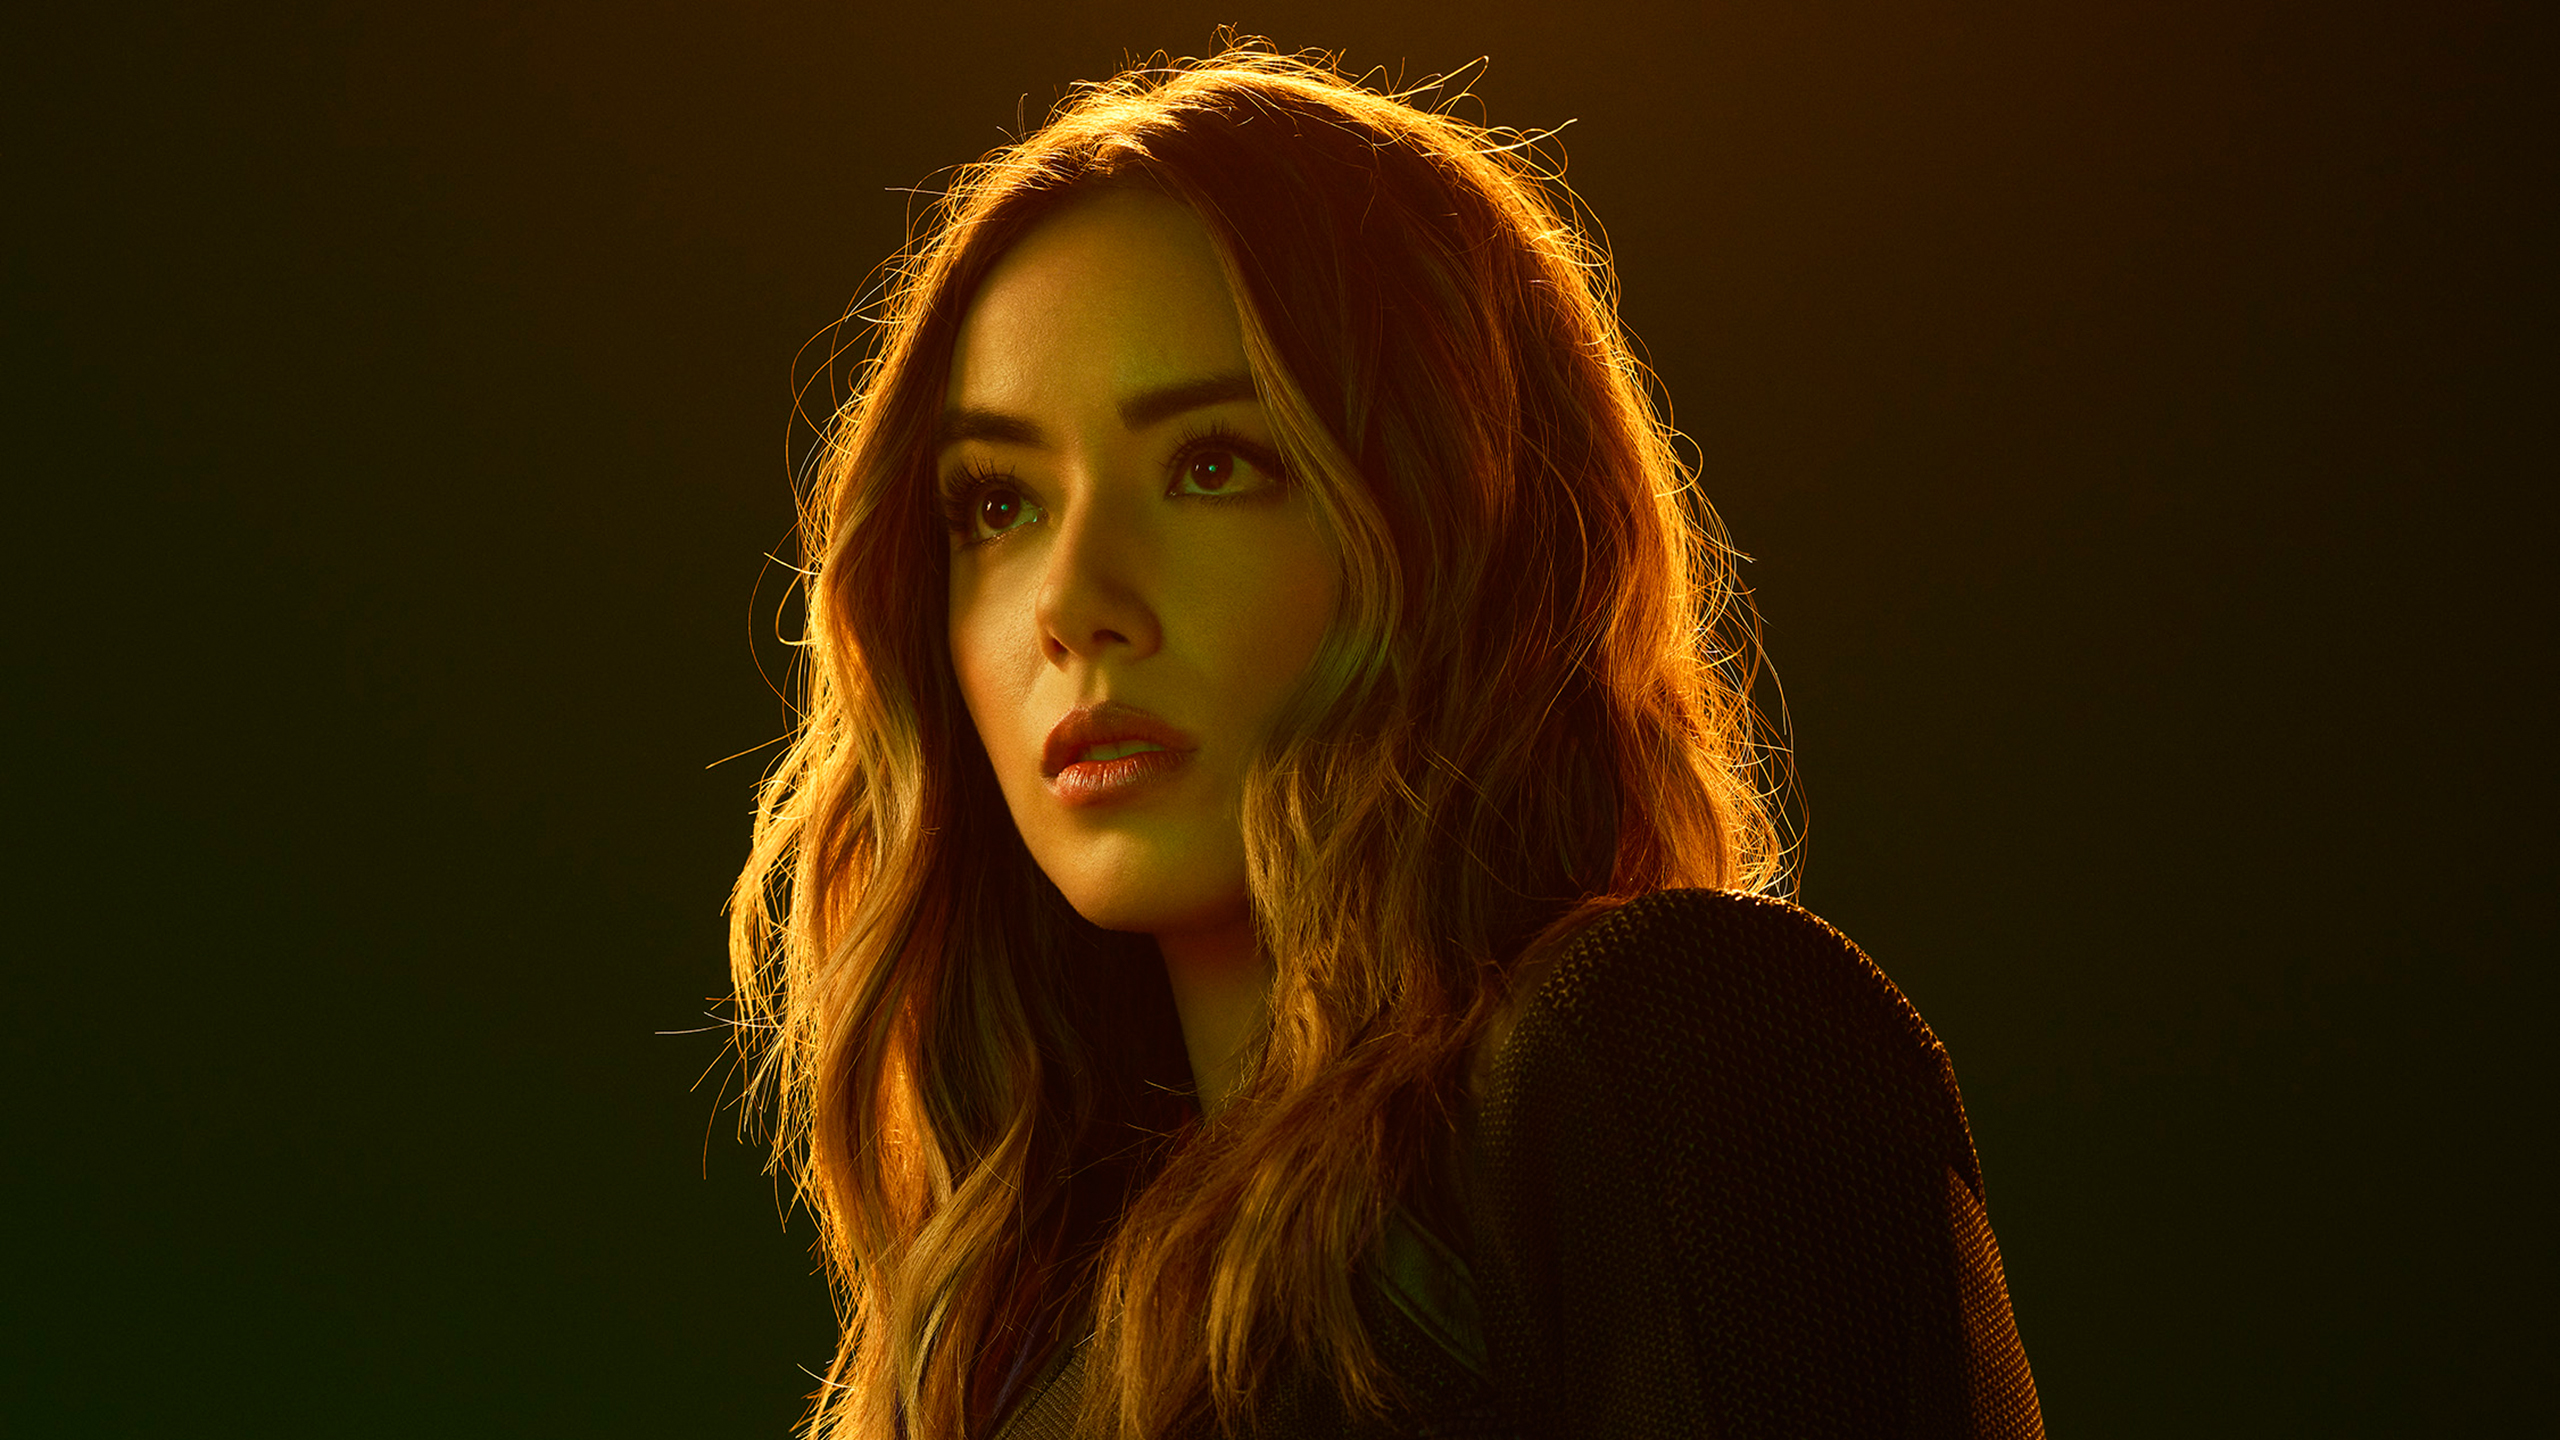 Chloe Bennet in Agents of SHIELD Season 6 2019 WallpapersChloe Bennet in Agents of SHIELD Season 6 2019 Wallpapers